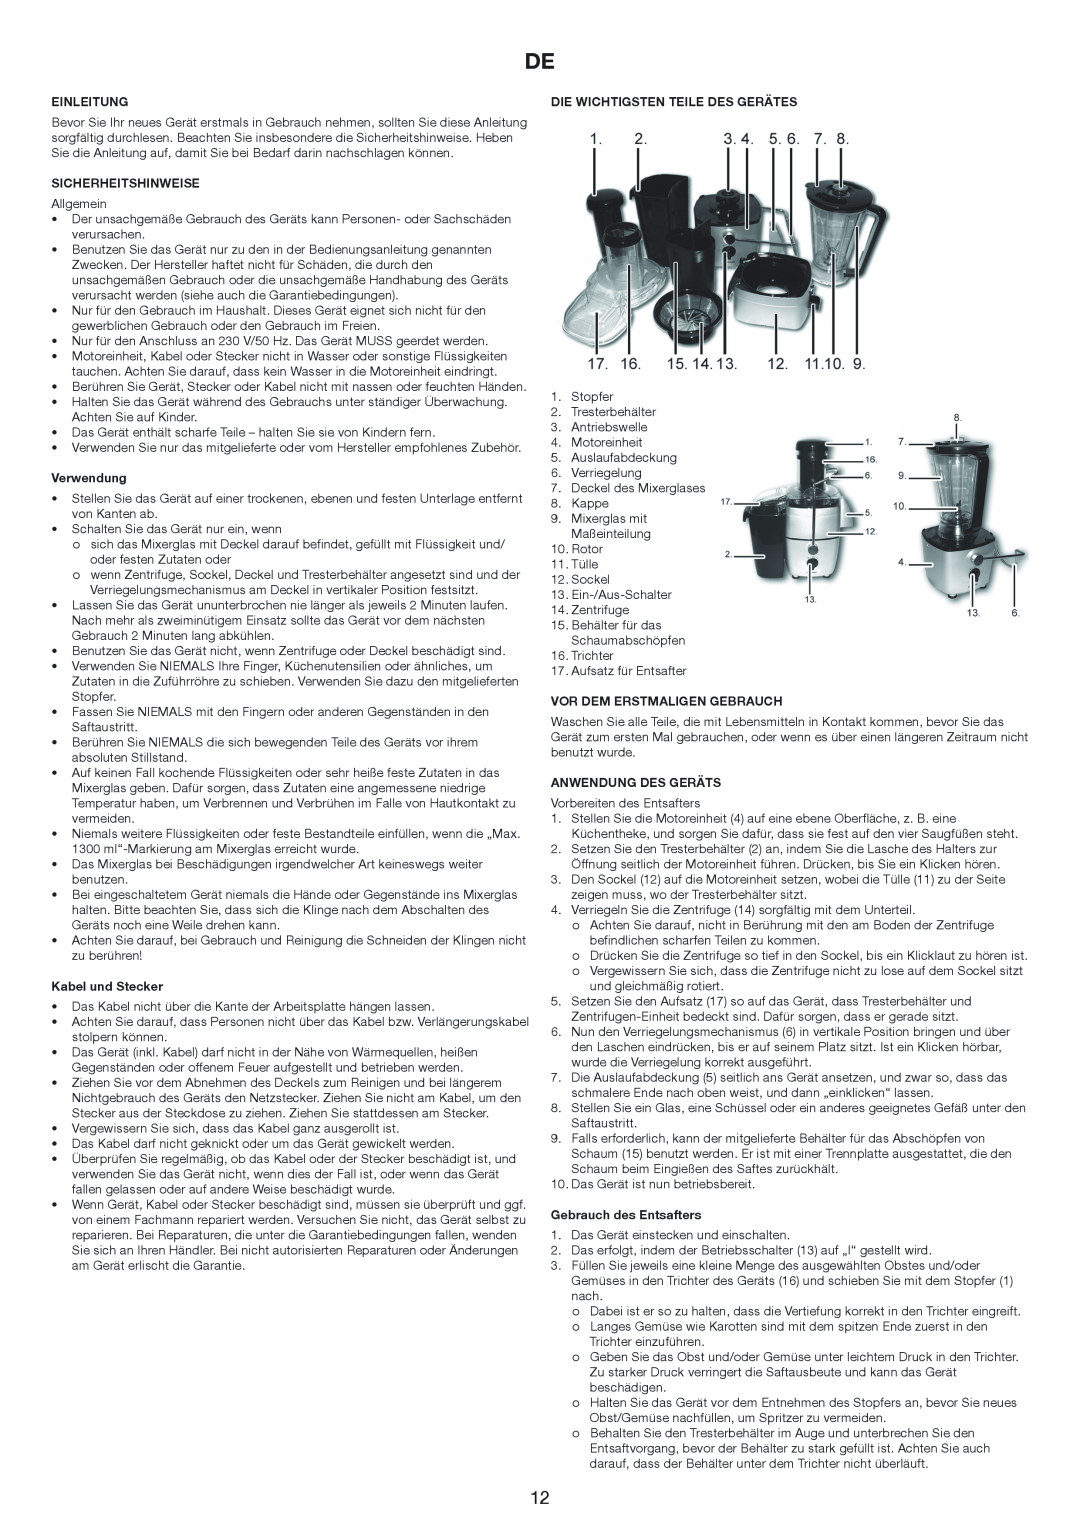 Melissa 644-007 manual Einleitung, Sicherheitshinweise, Verwendung, Kabel und Stecker, Die Wichtigsten Teile Des Gerätes 